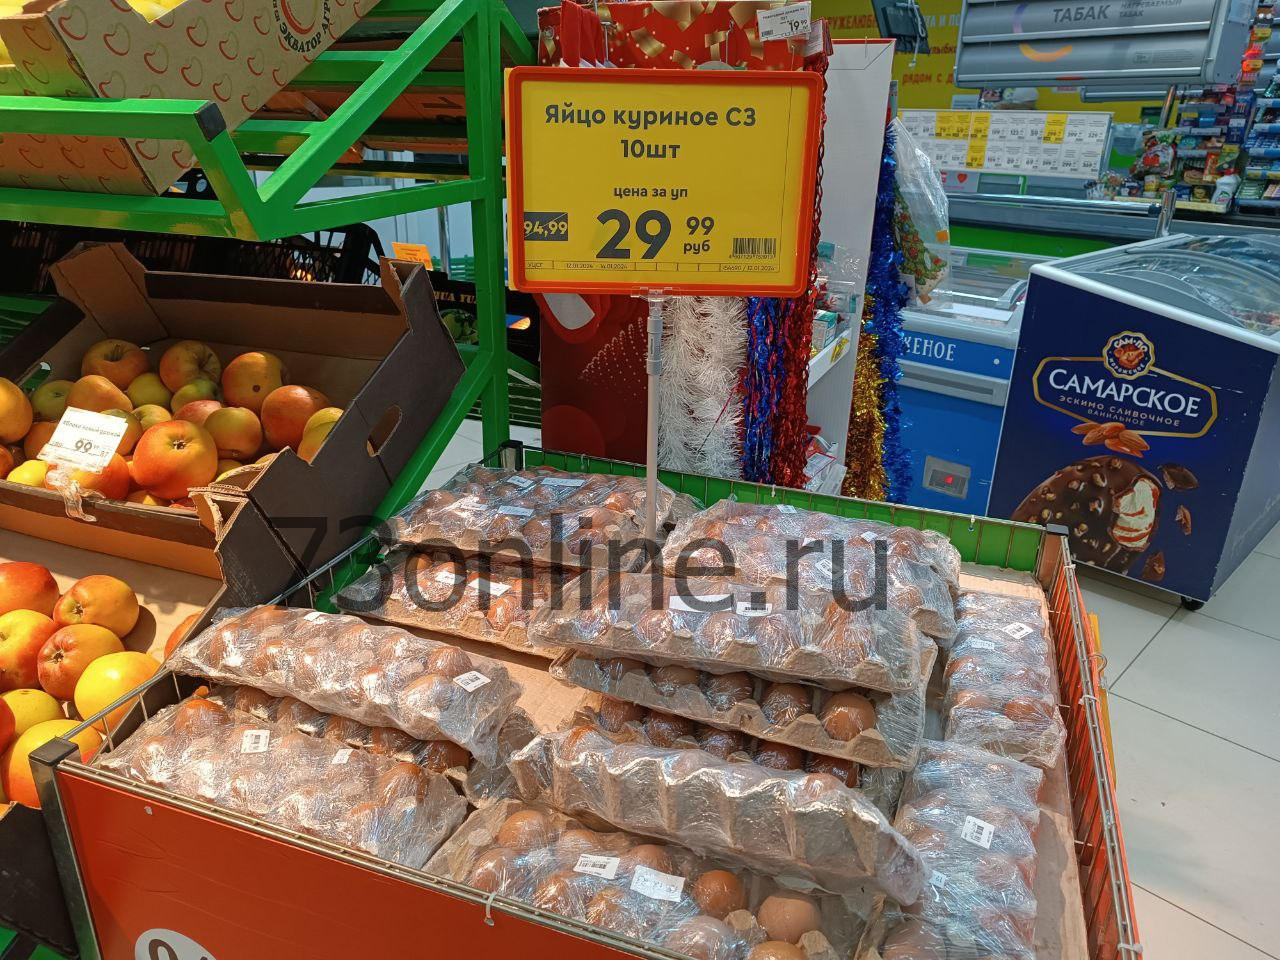 Ульяновские магазины рвут цены на яйца - 30 рублей за десяток!